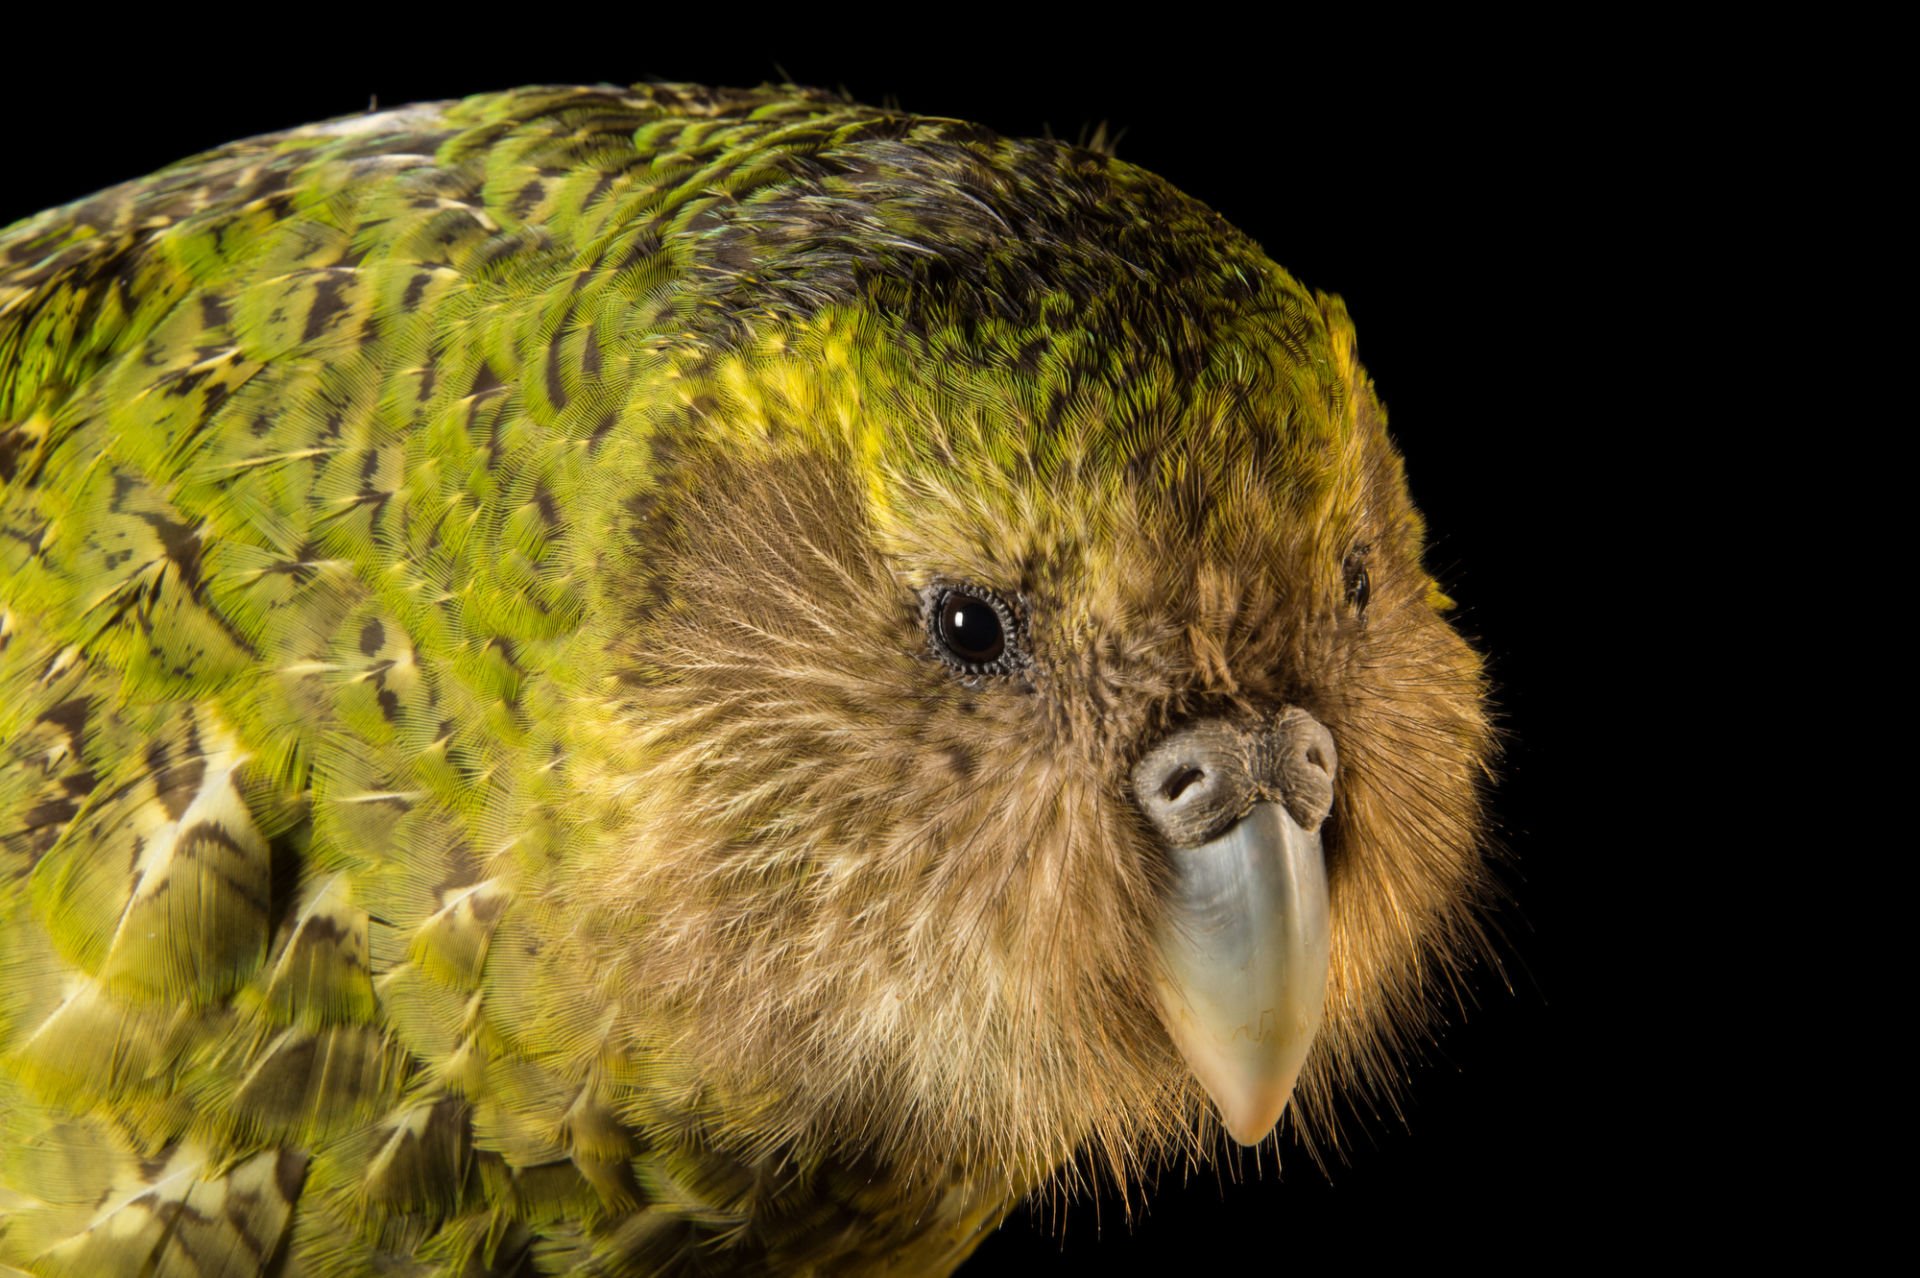 Совиный попугай какапо: нелетающий, ночная птица похожая на сову из новой зеландии, фото